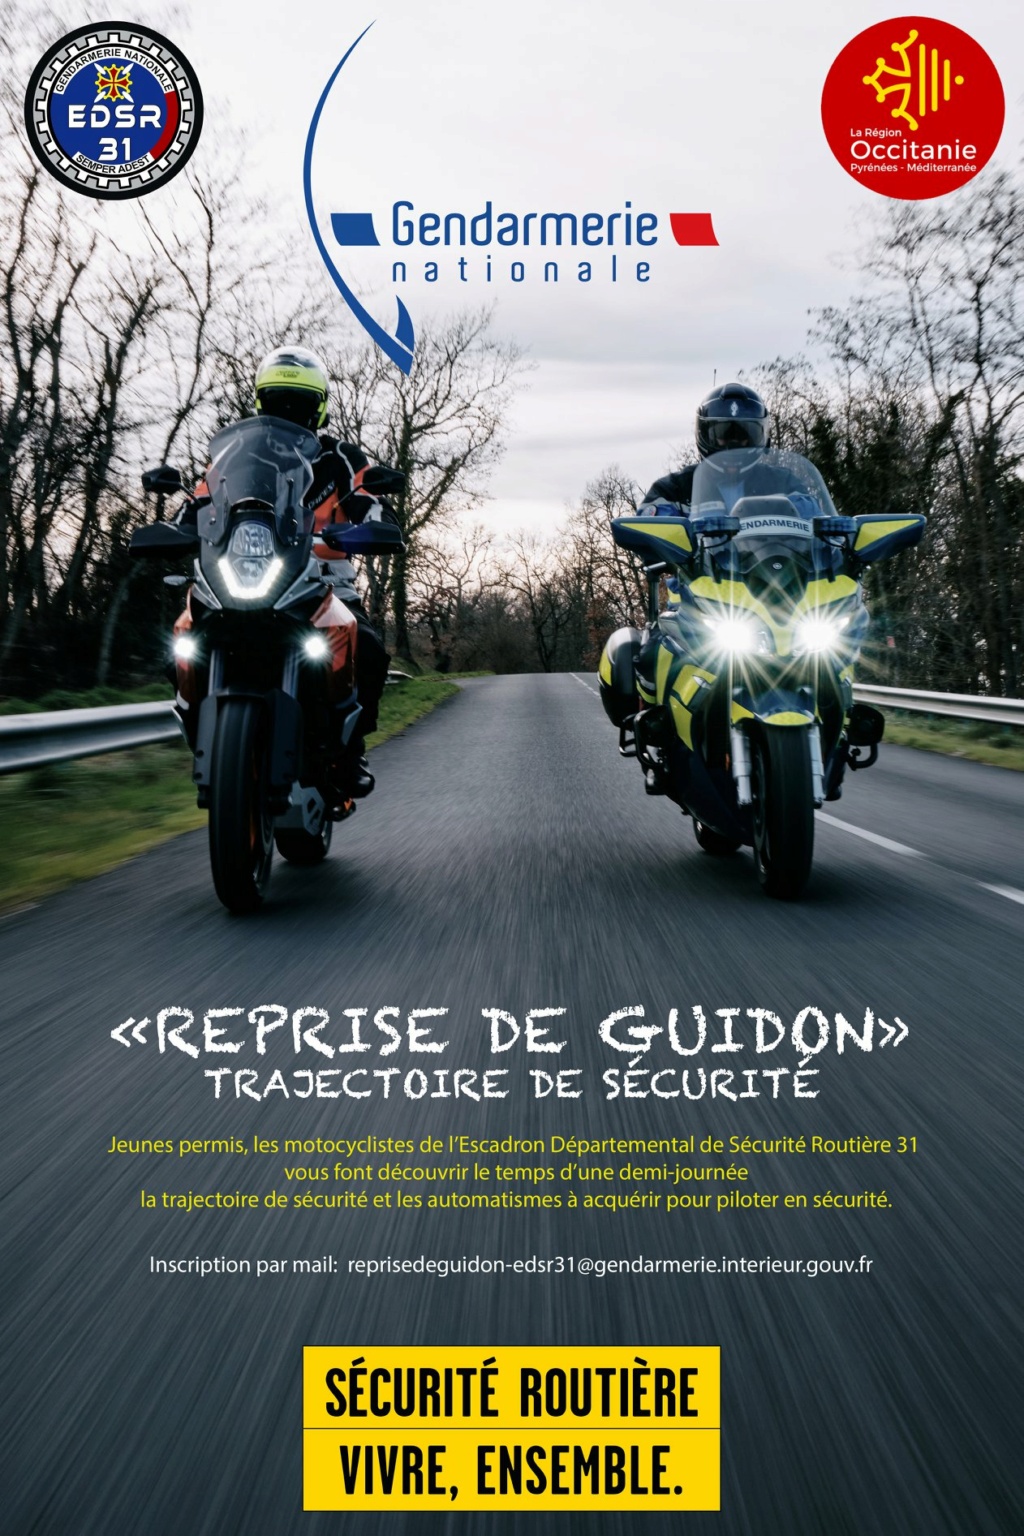 Reprises de Guidon / Trajectoire de sécurité - Occitanie  15548910